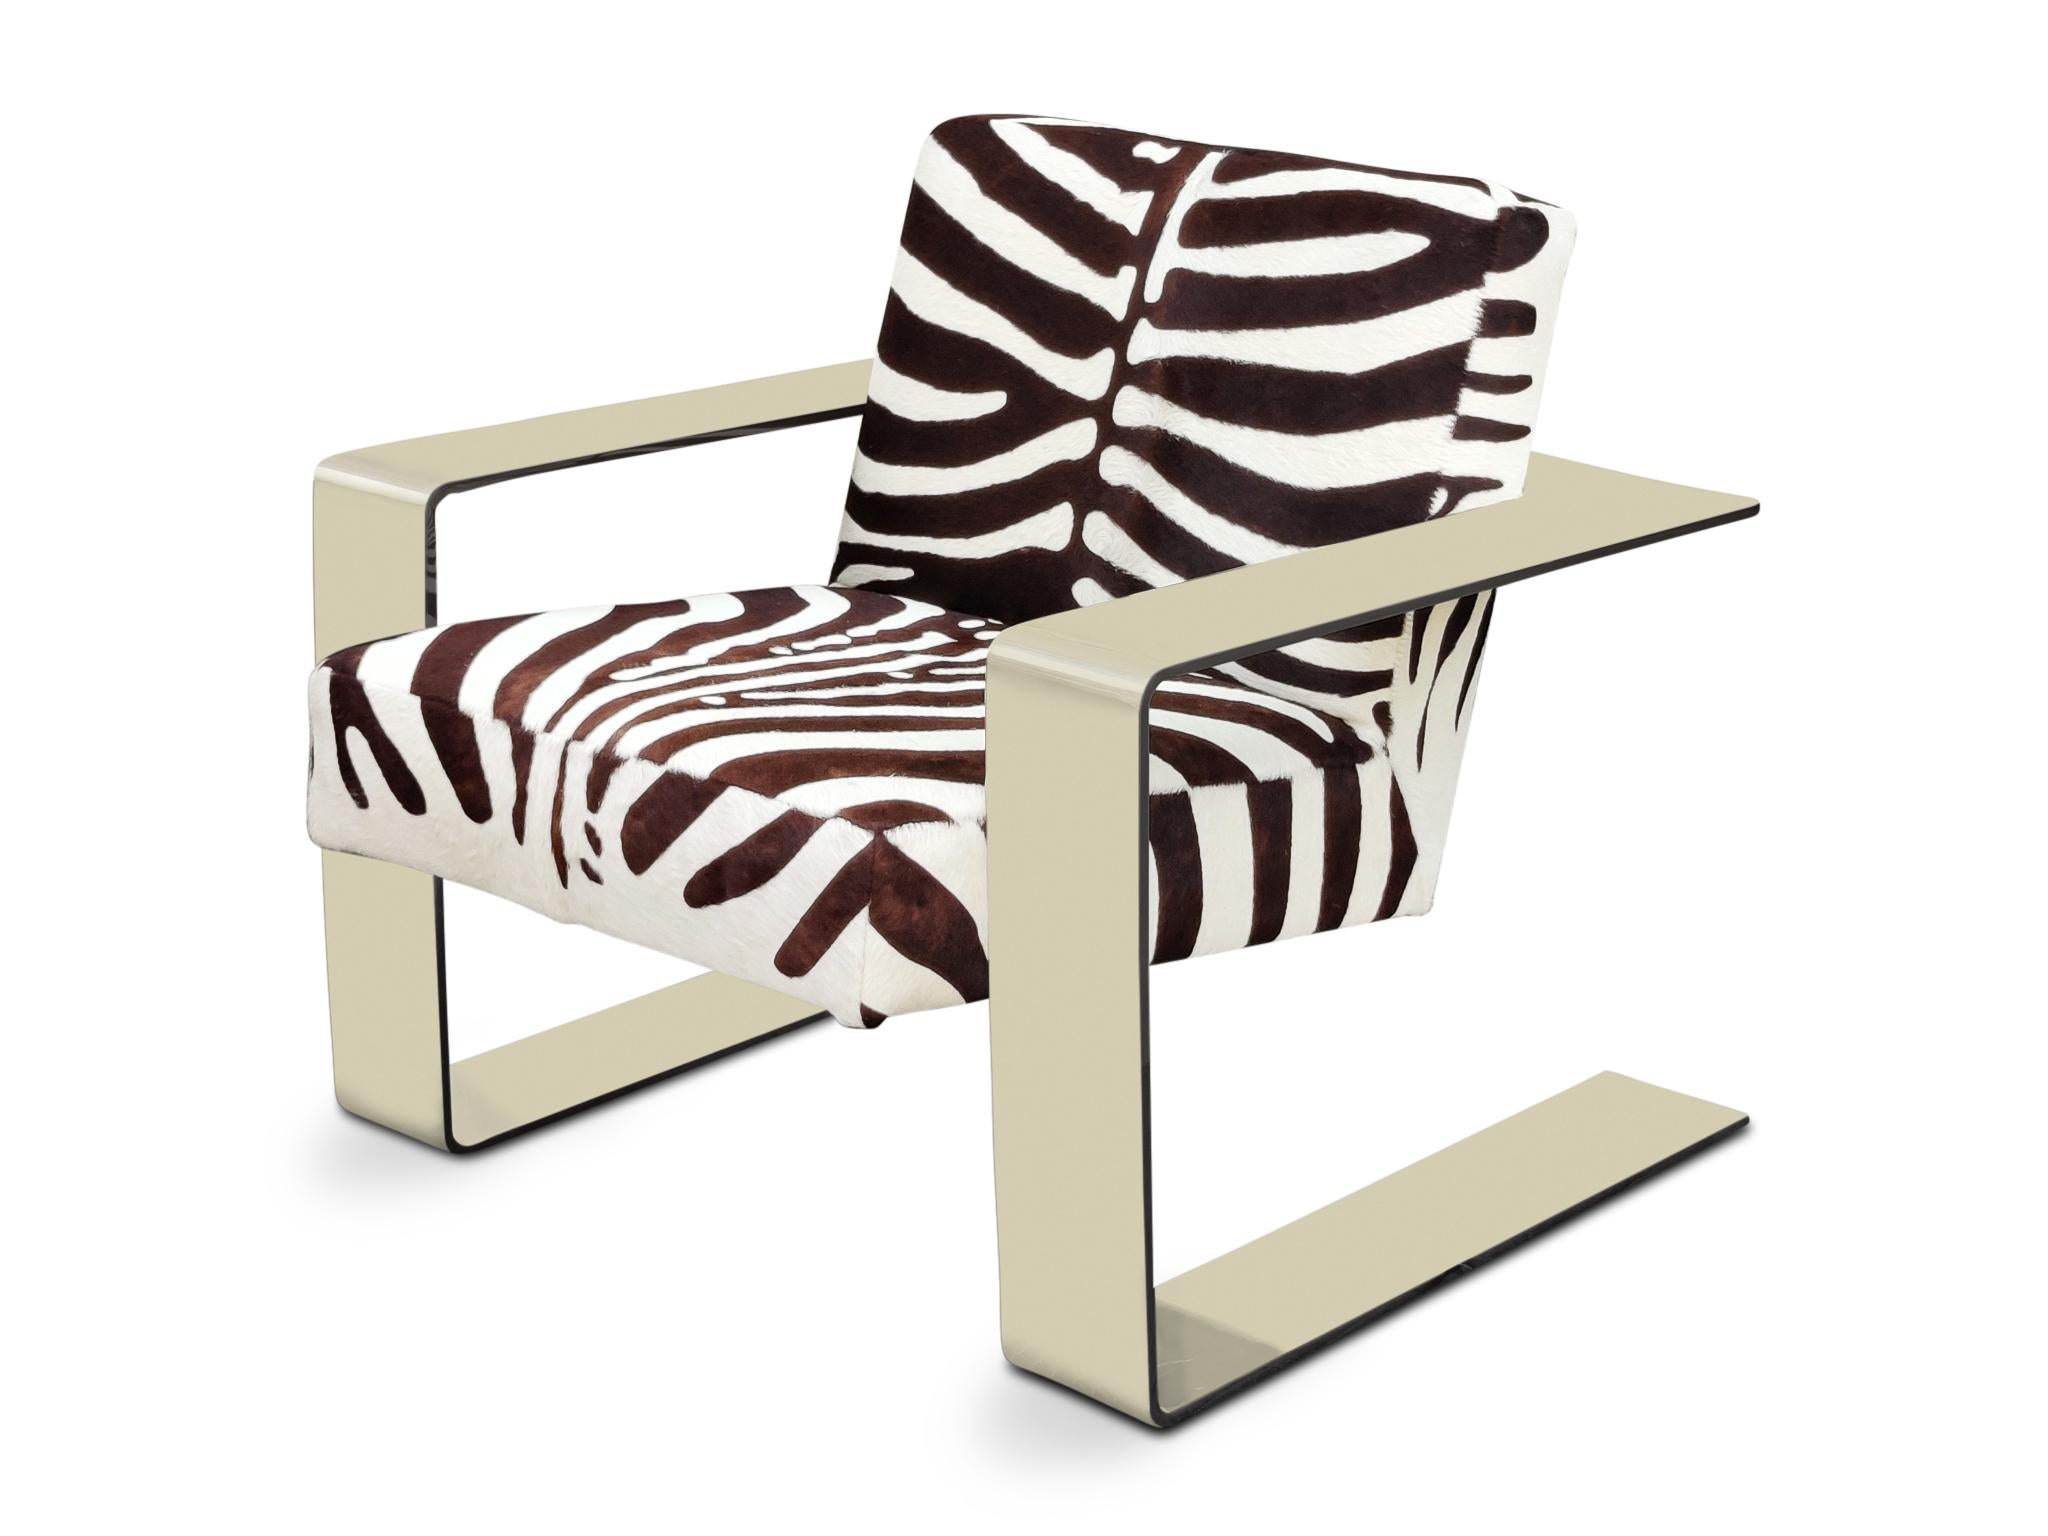 Postmoderne Bernhardt Chaise longue Connor Structure chromée Revêtement en peau de vache imprimé zèbre